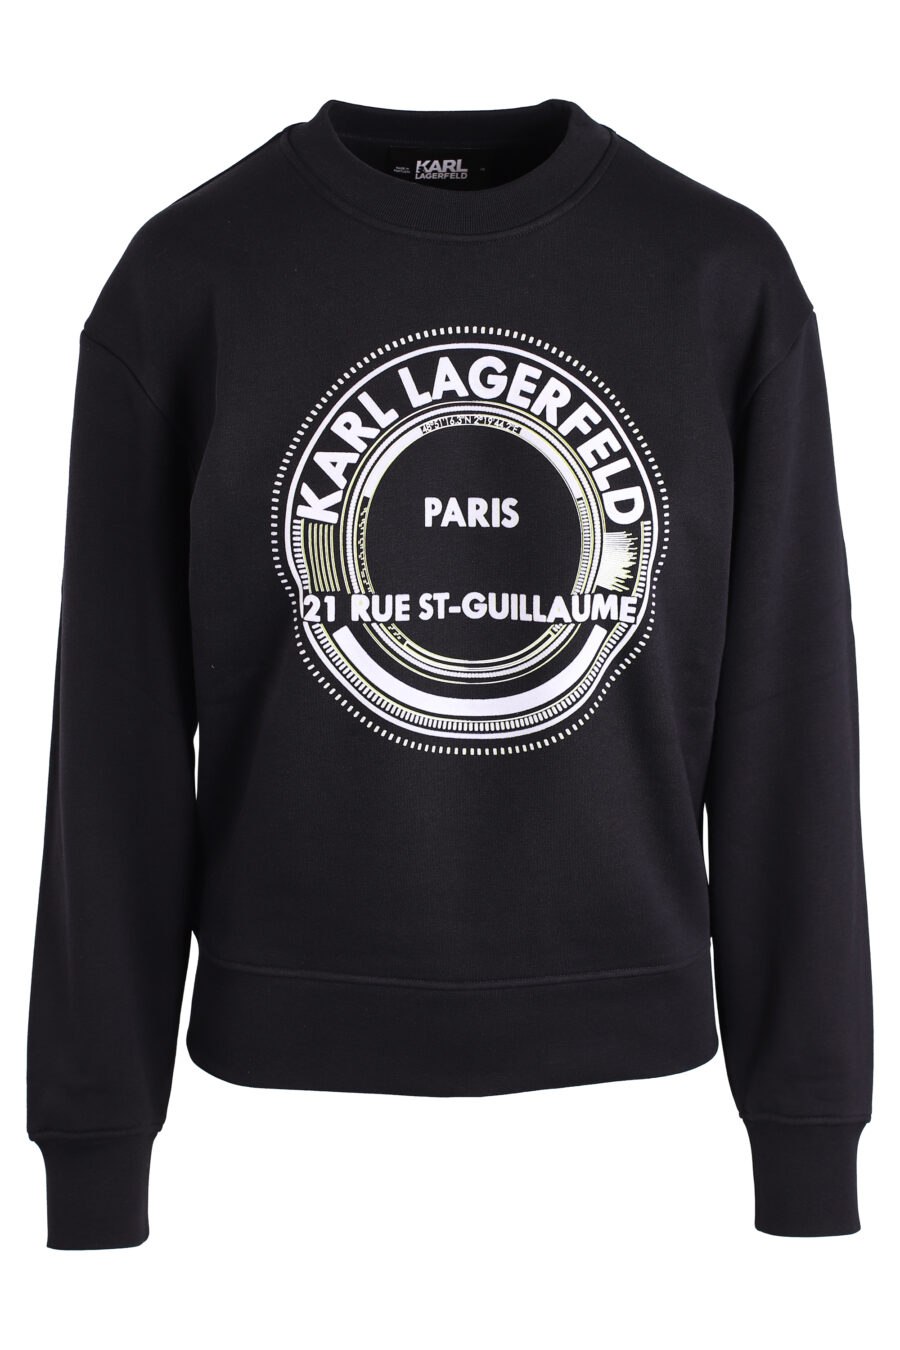 Black sweatshirt with large round logo - IMG 3330